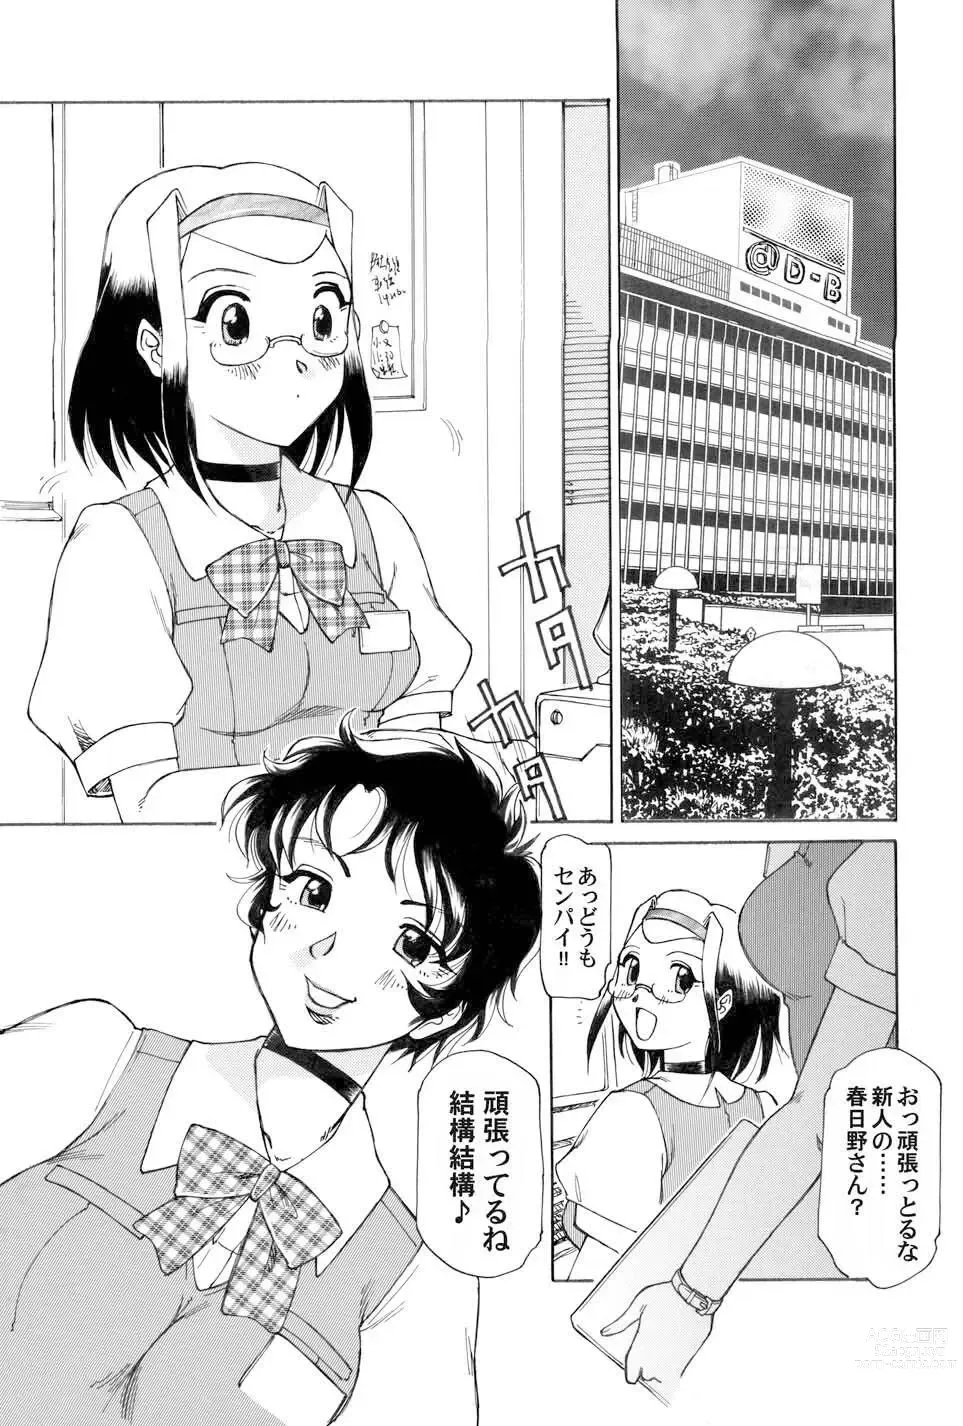 Page 3 of manga Kochira Soumubu Niku Houshika